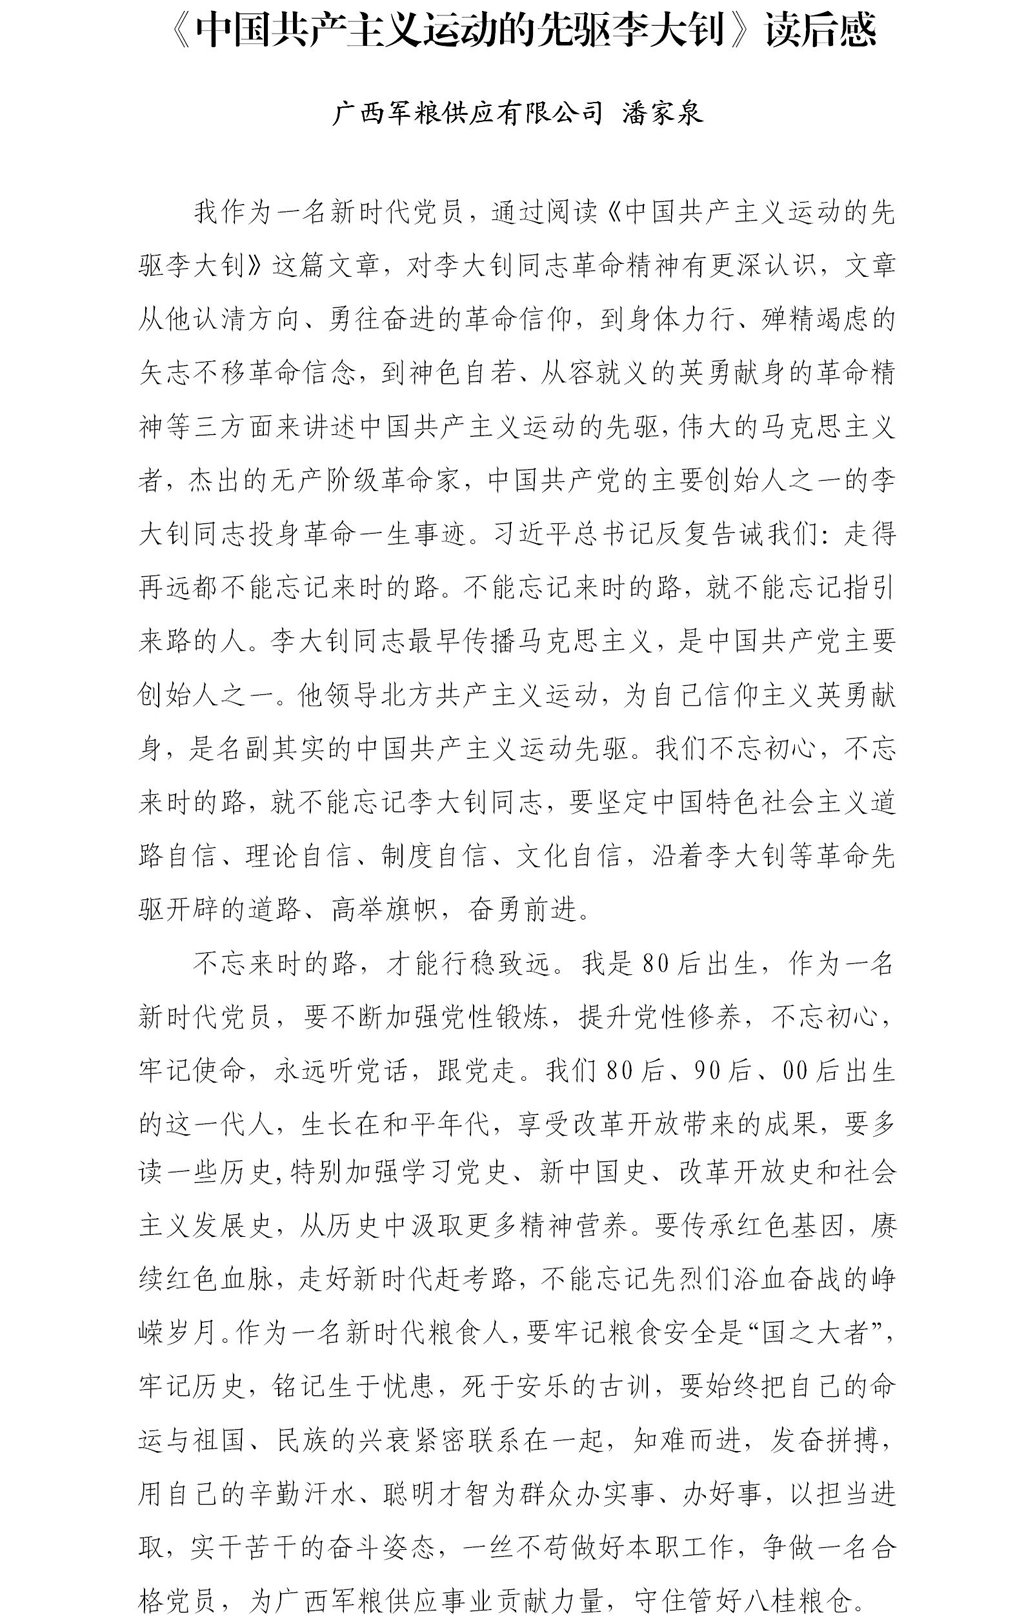 潘家泉-读《中国共产主义运动的先驱李大钊》后感.jpg